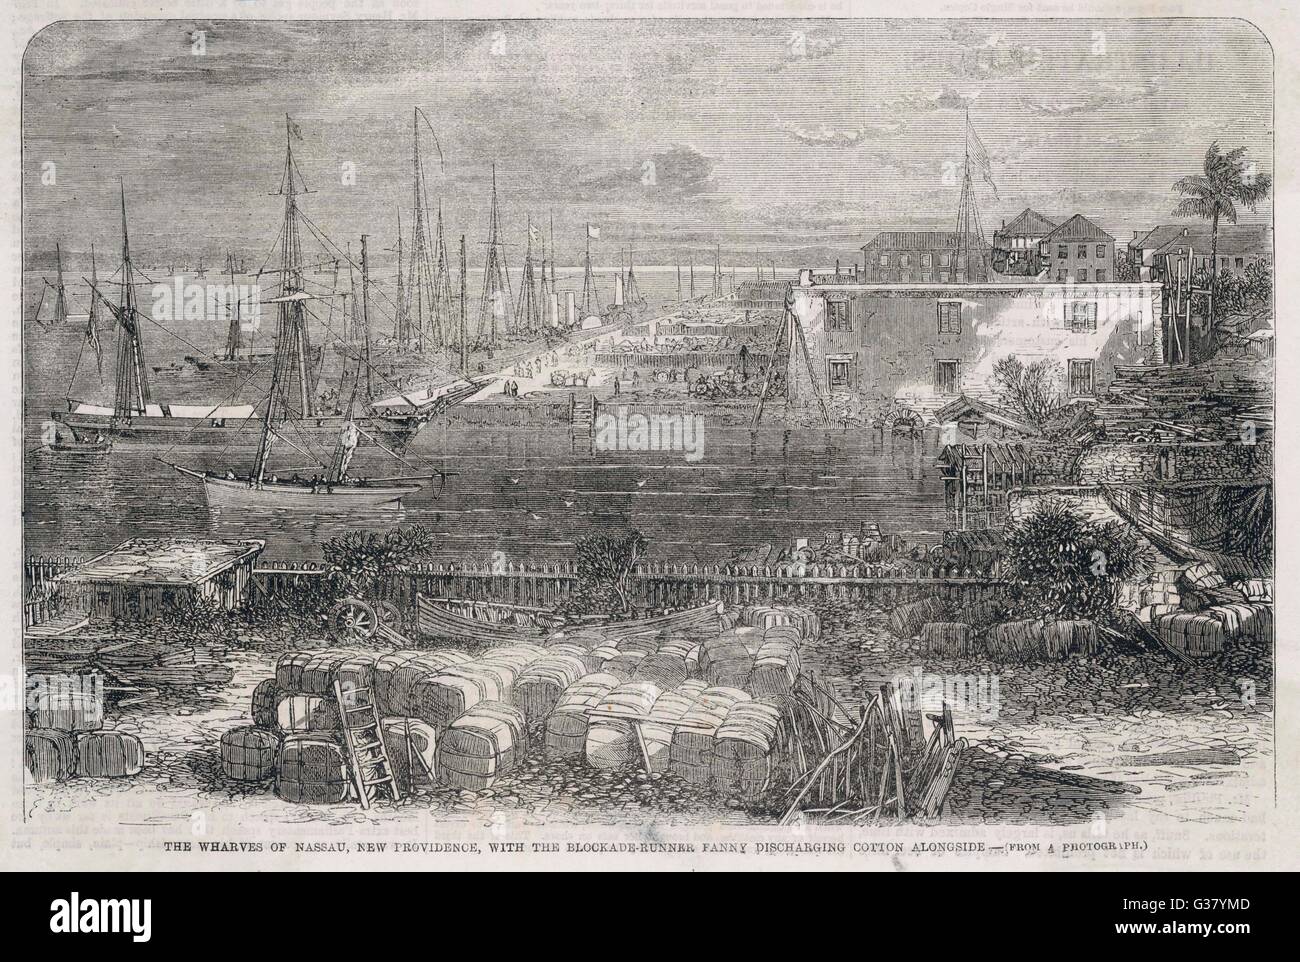 Nassau während des amerikanischen Bürgerkrieges. Der Raddampfer "Fanny", dargestellt an der Wharf ist ein Blockadebrecher von der Konföderation, Entladung Baumwolle Datum: 1864 Stockfoto